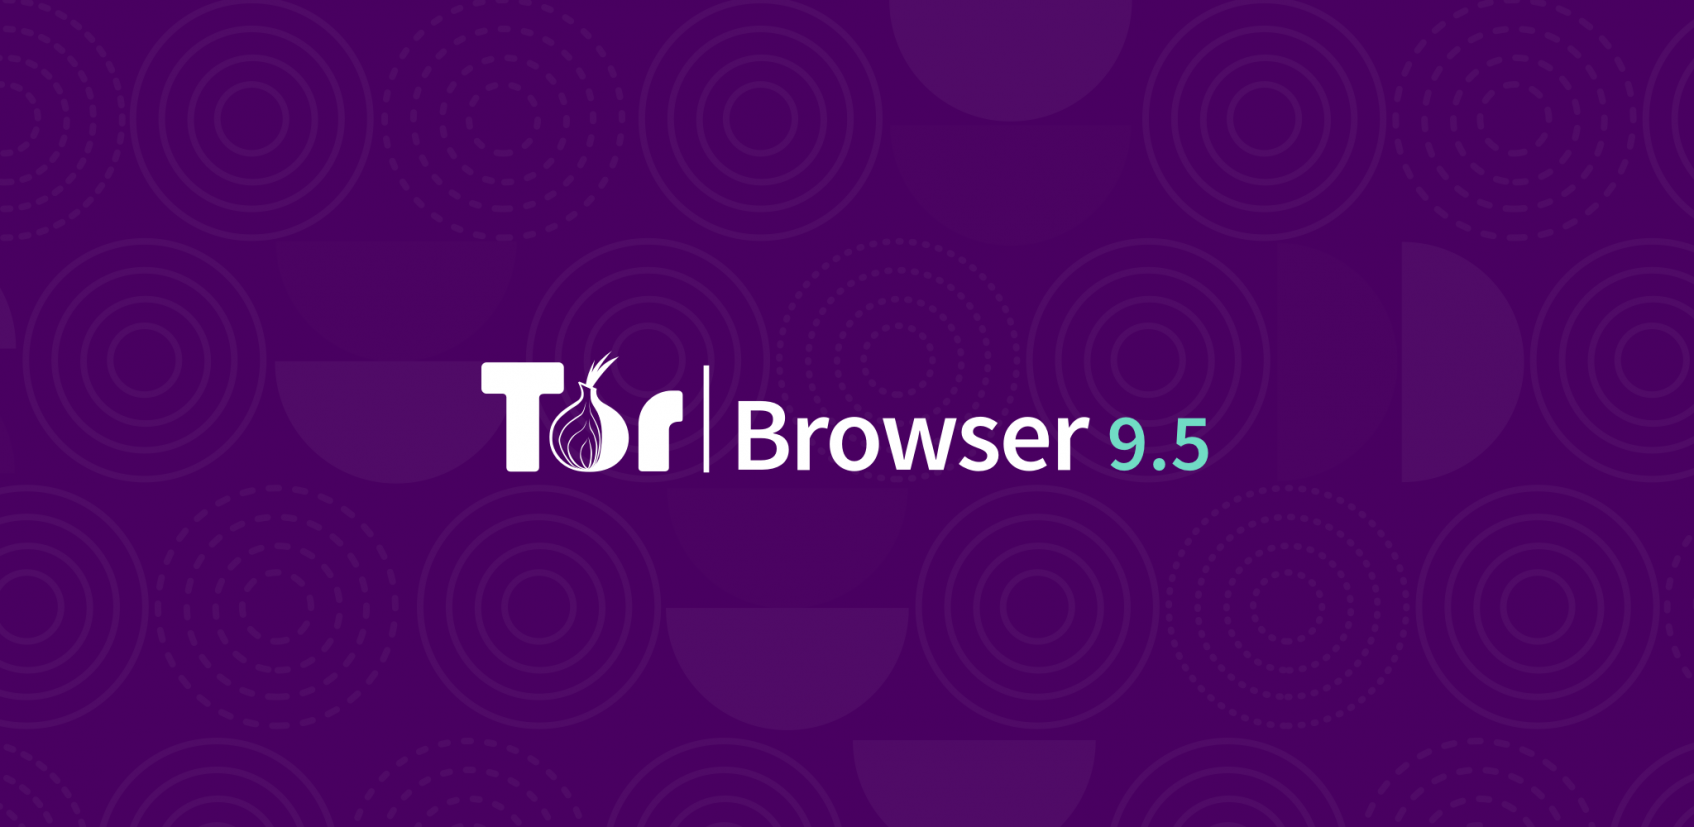 Tor browser risks гидра скачать тор браузер x32